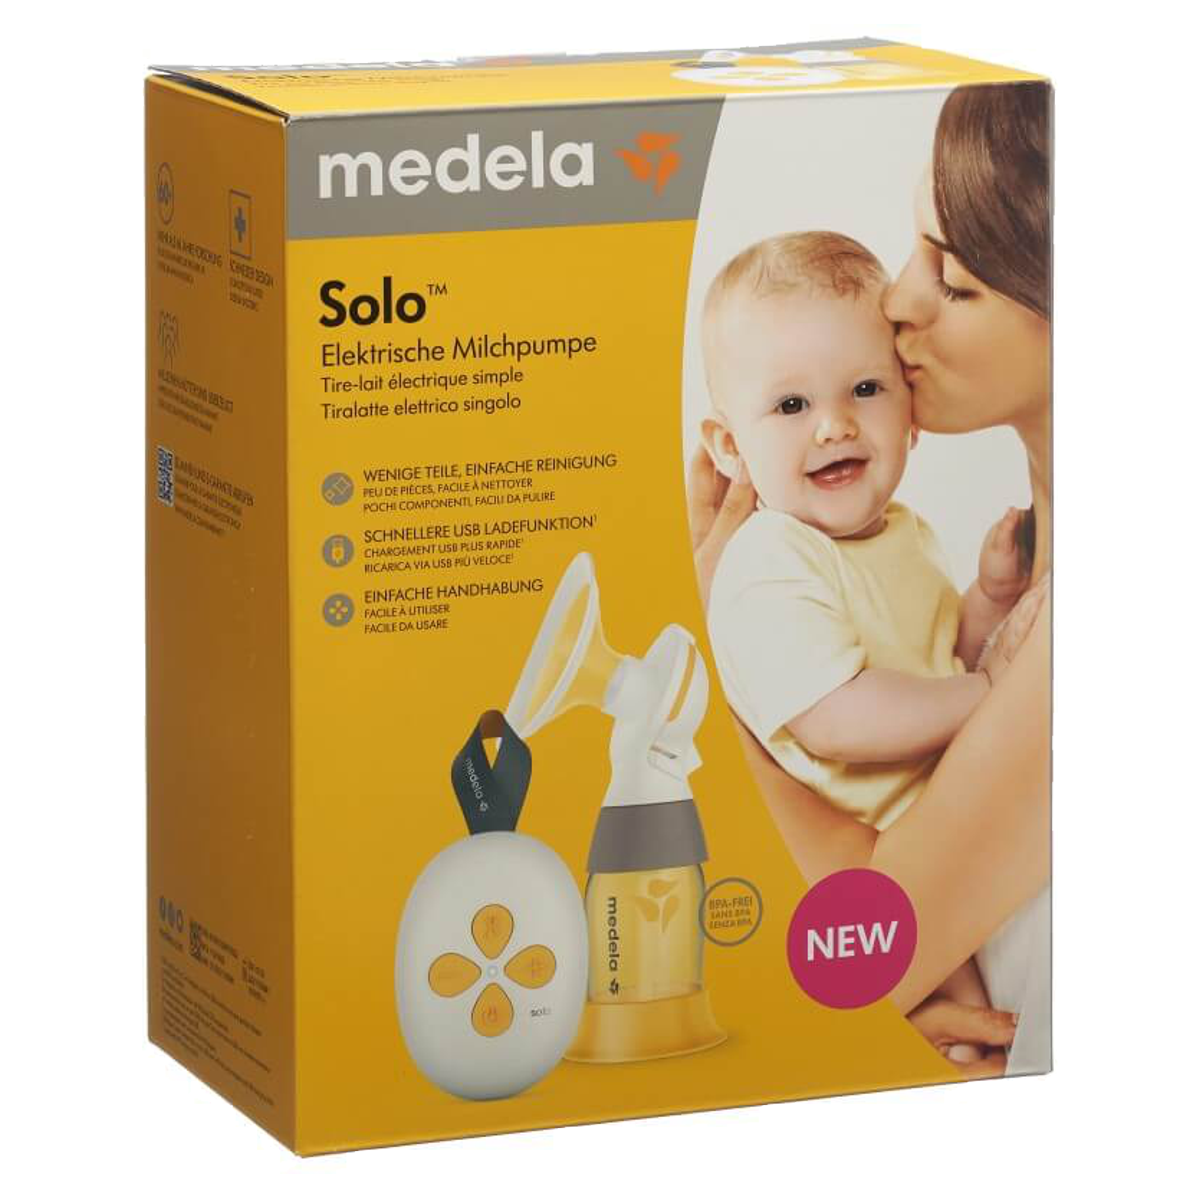 Medela Solo™ elektrische Einzelmilchpumpe